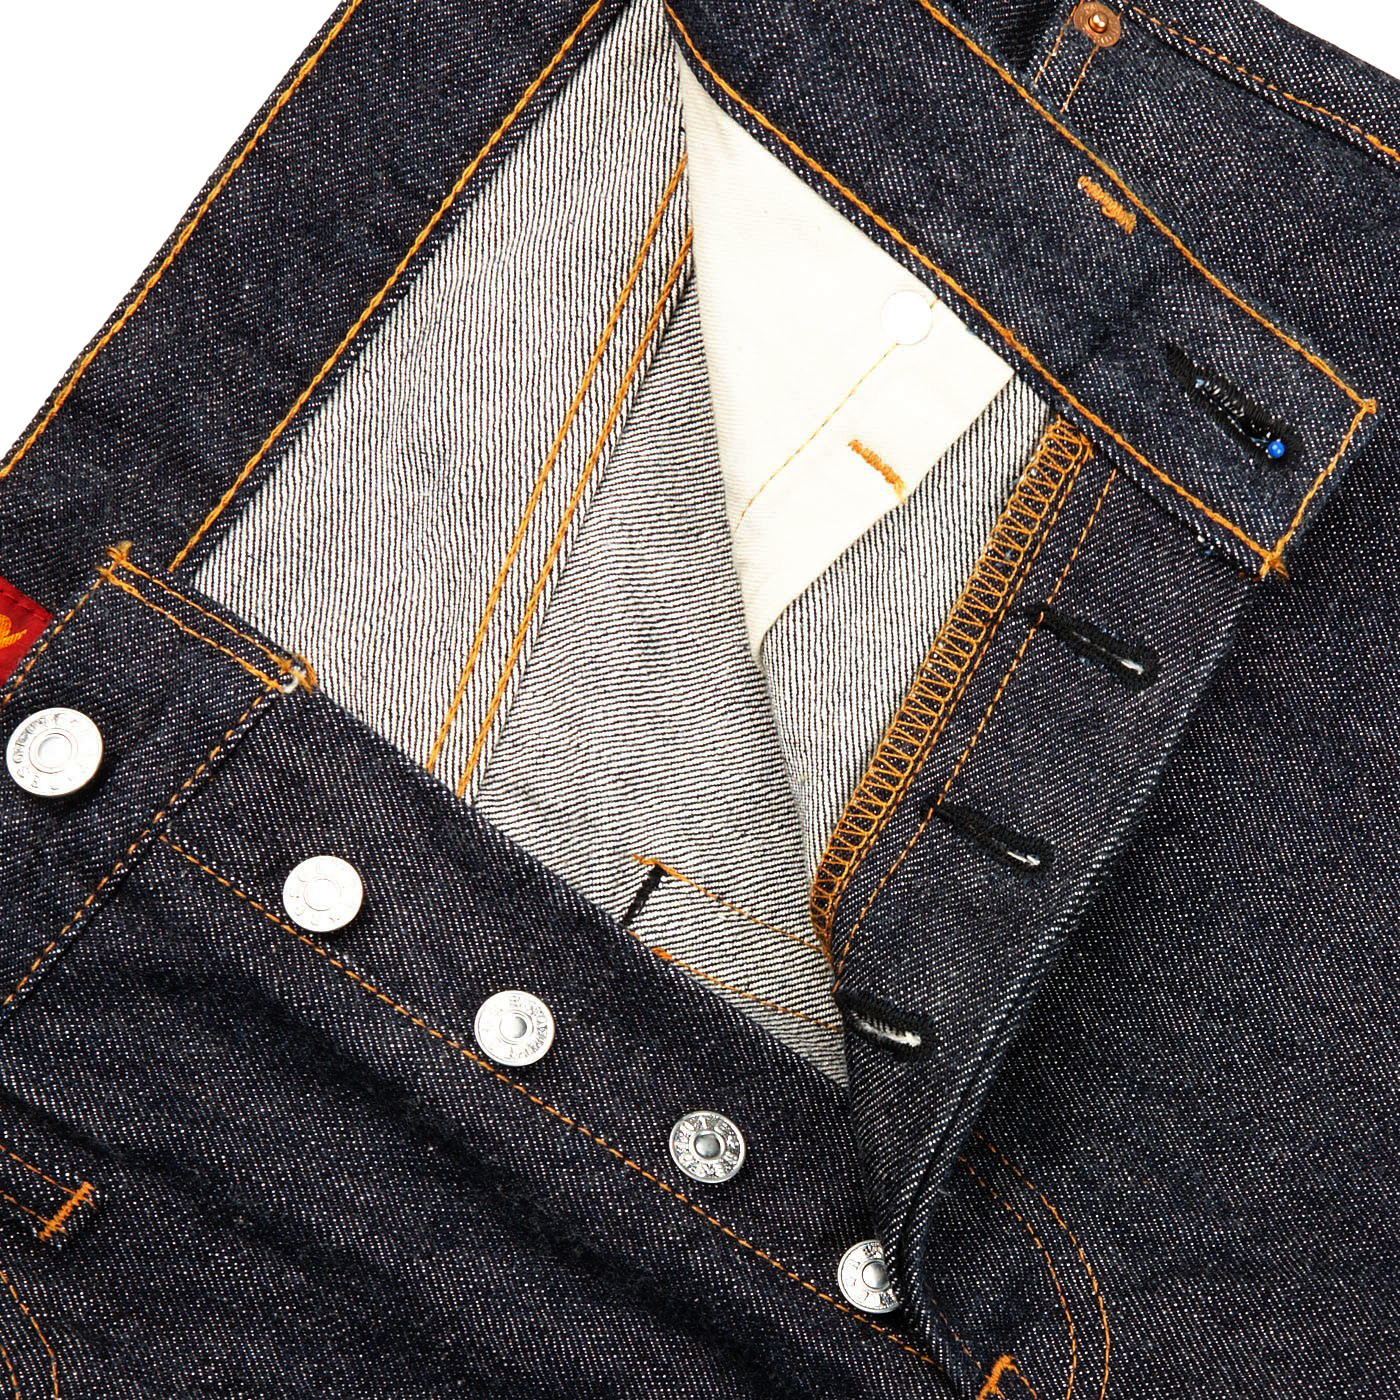 Resolute Dark Blue Cotton 710 One Wash Jeans Zipper